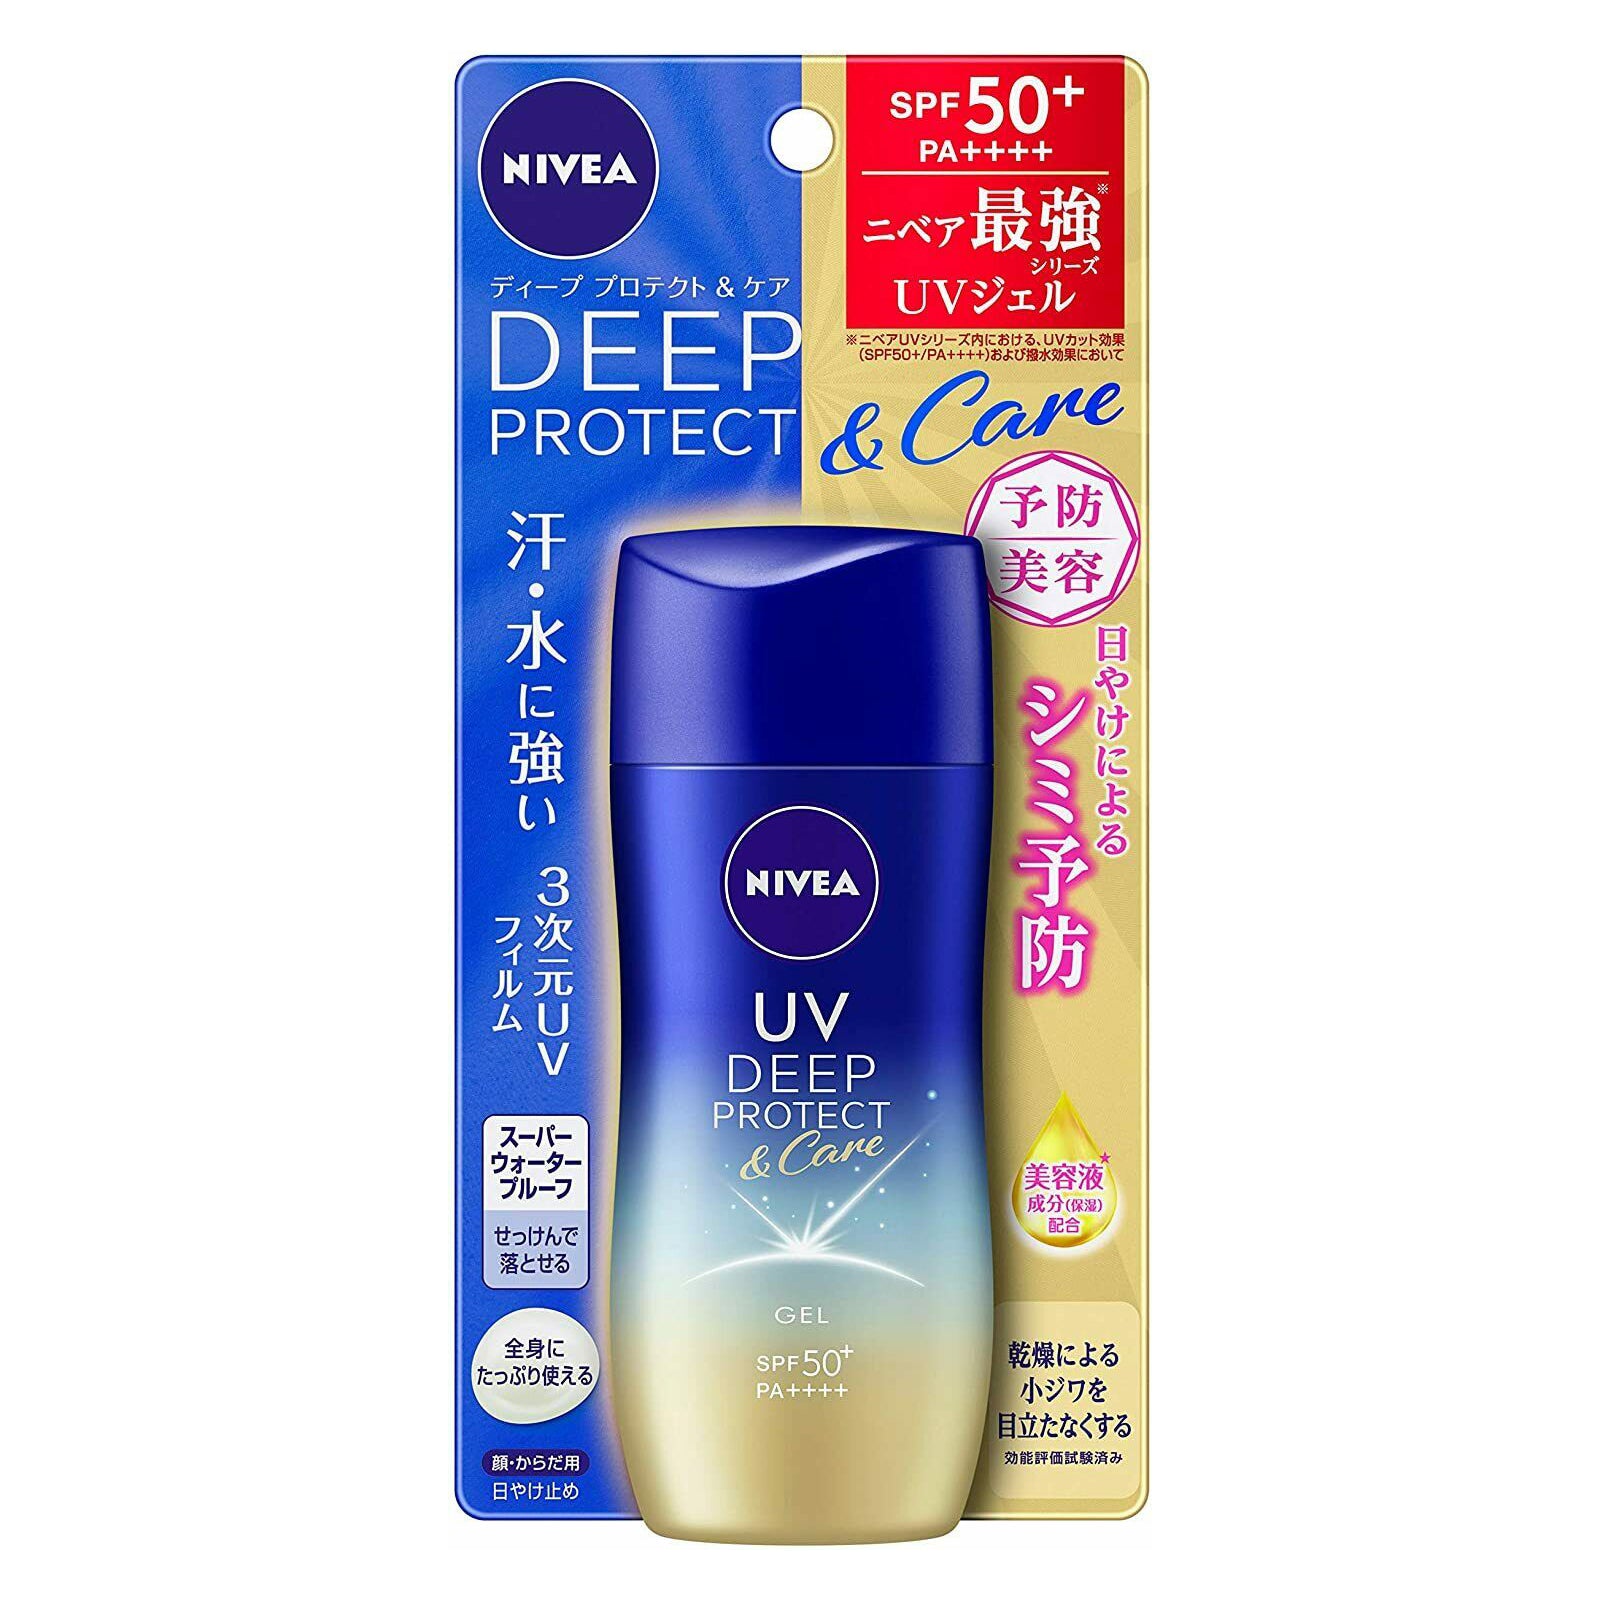 Nivea UV Deep Protect & Care Gel SPF 50+ Beauty Nivea Japan   